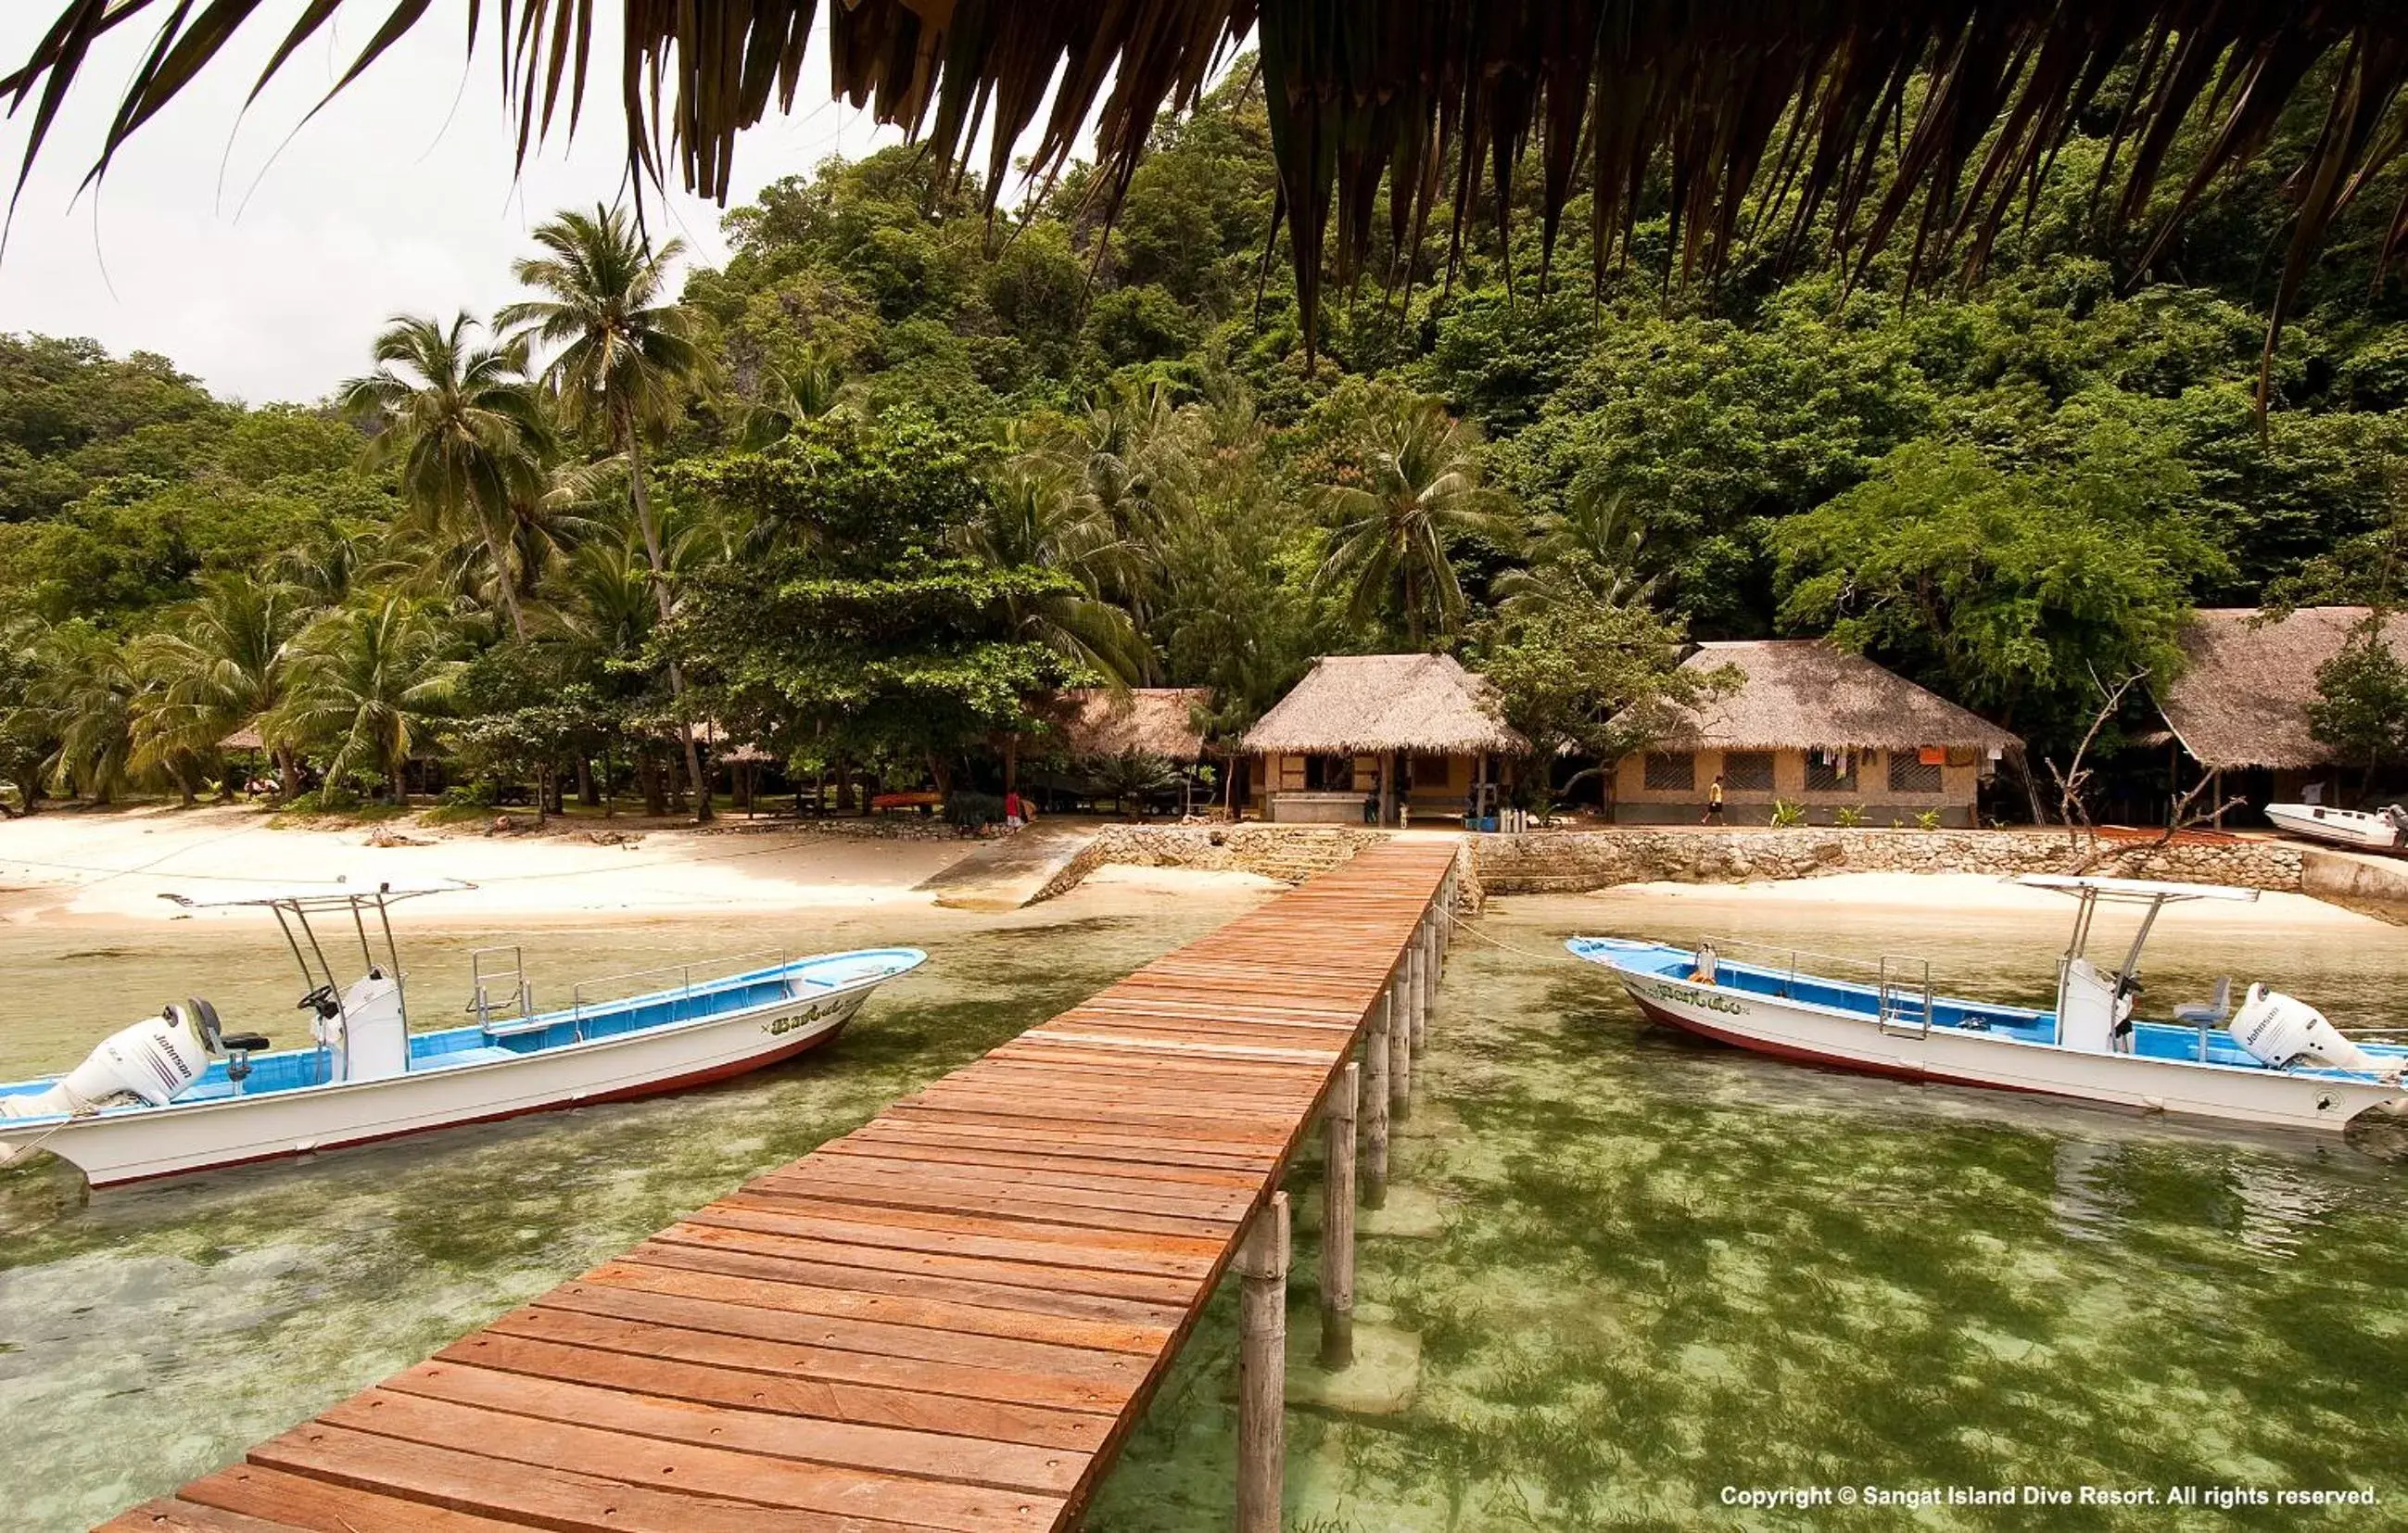 Property building, Swimming Pool in Sangat Island Dive Resort